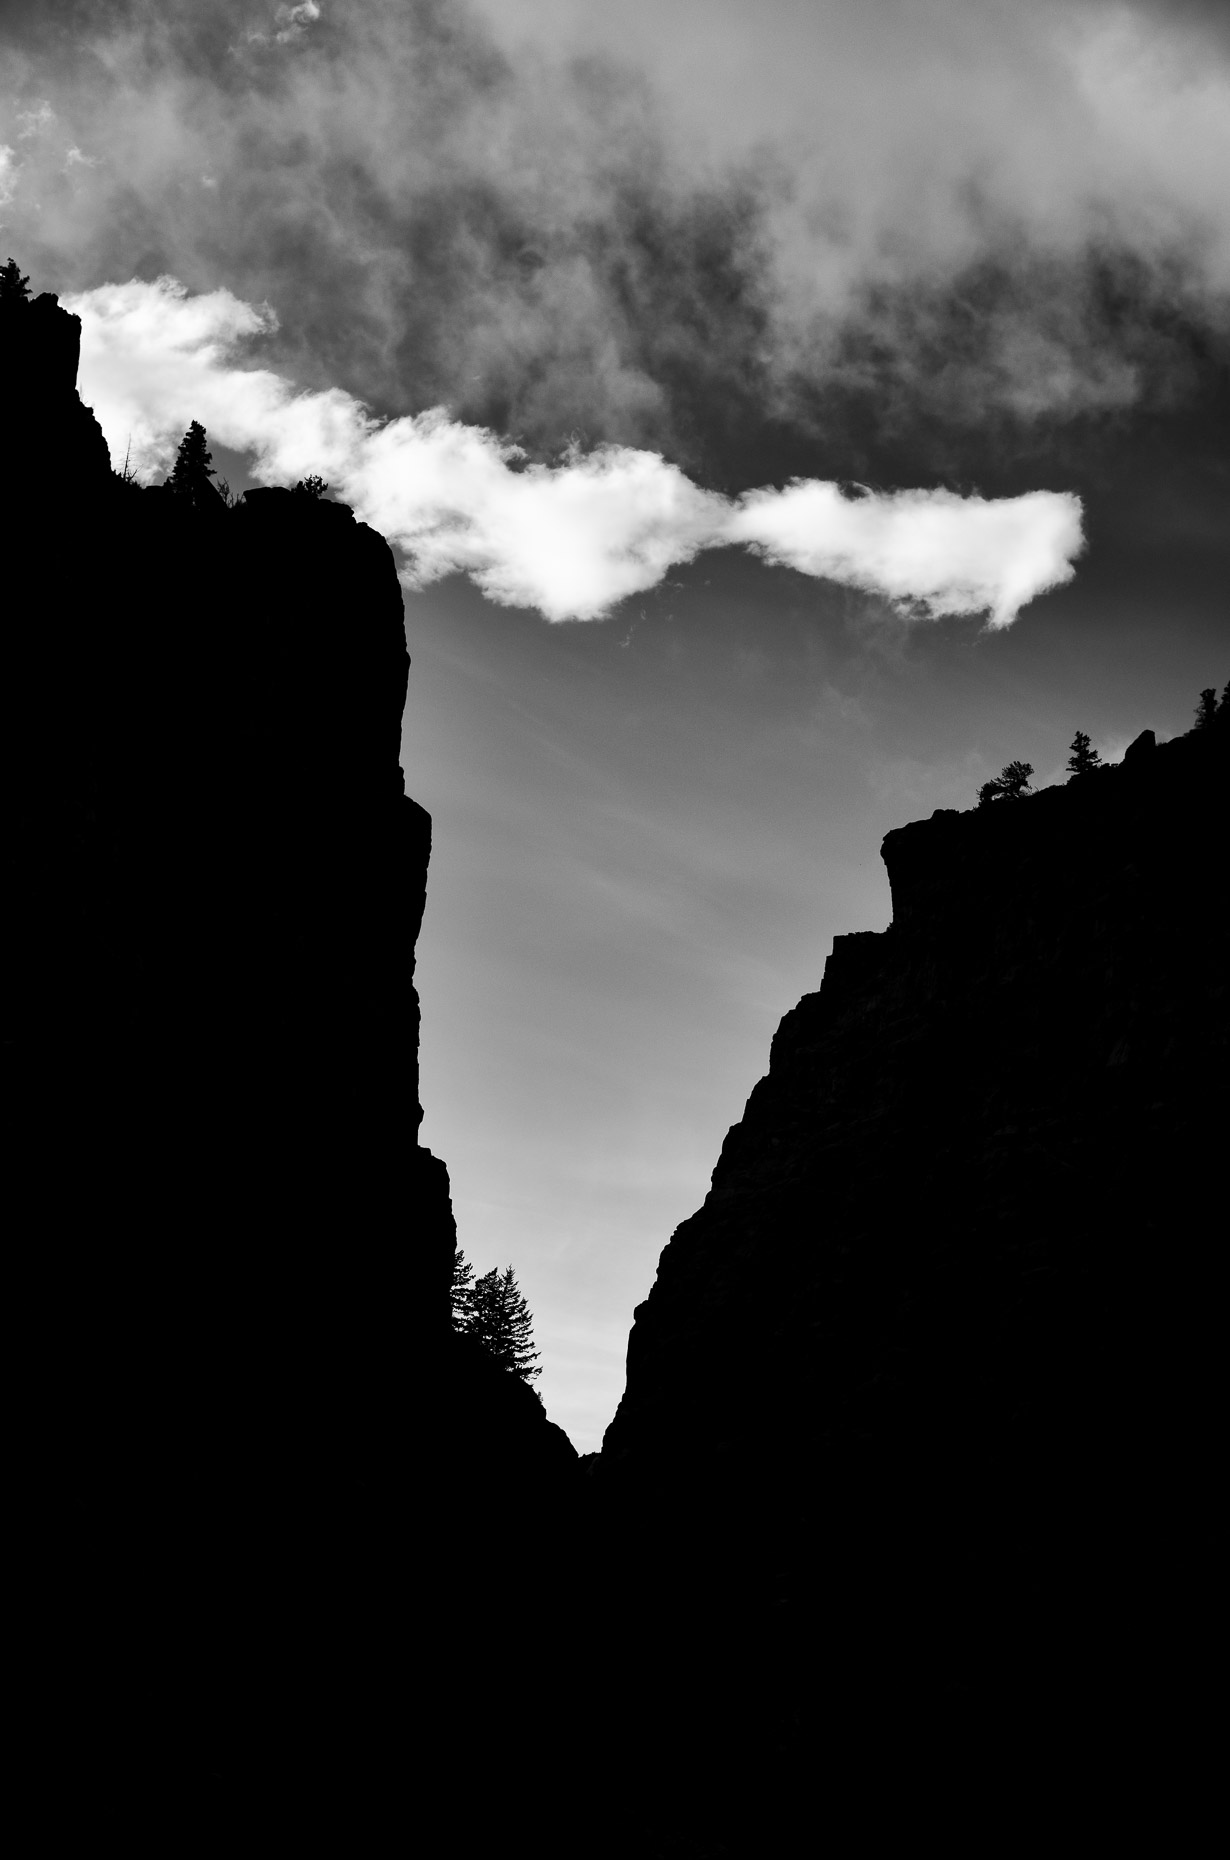 Shoshone Canyon